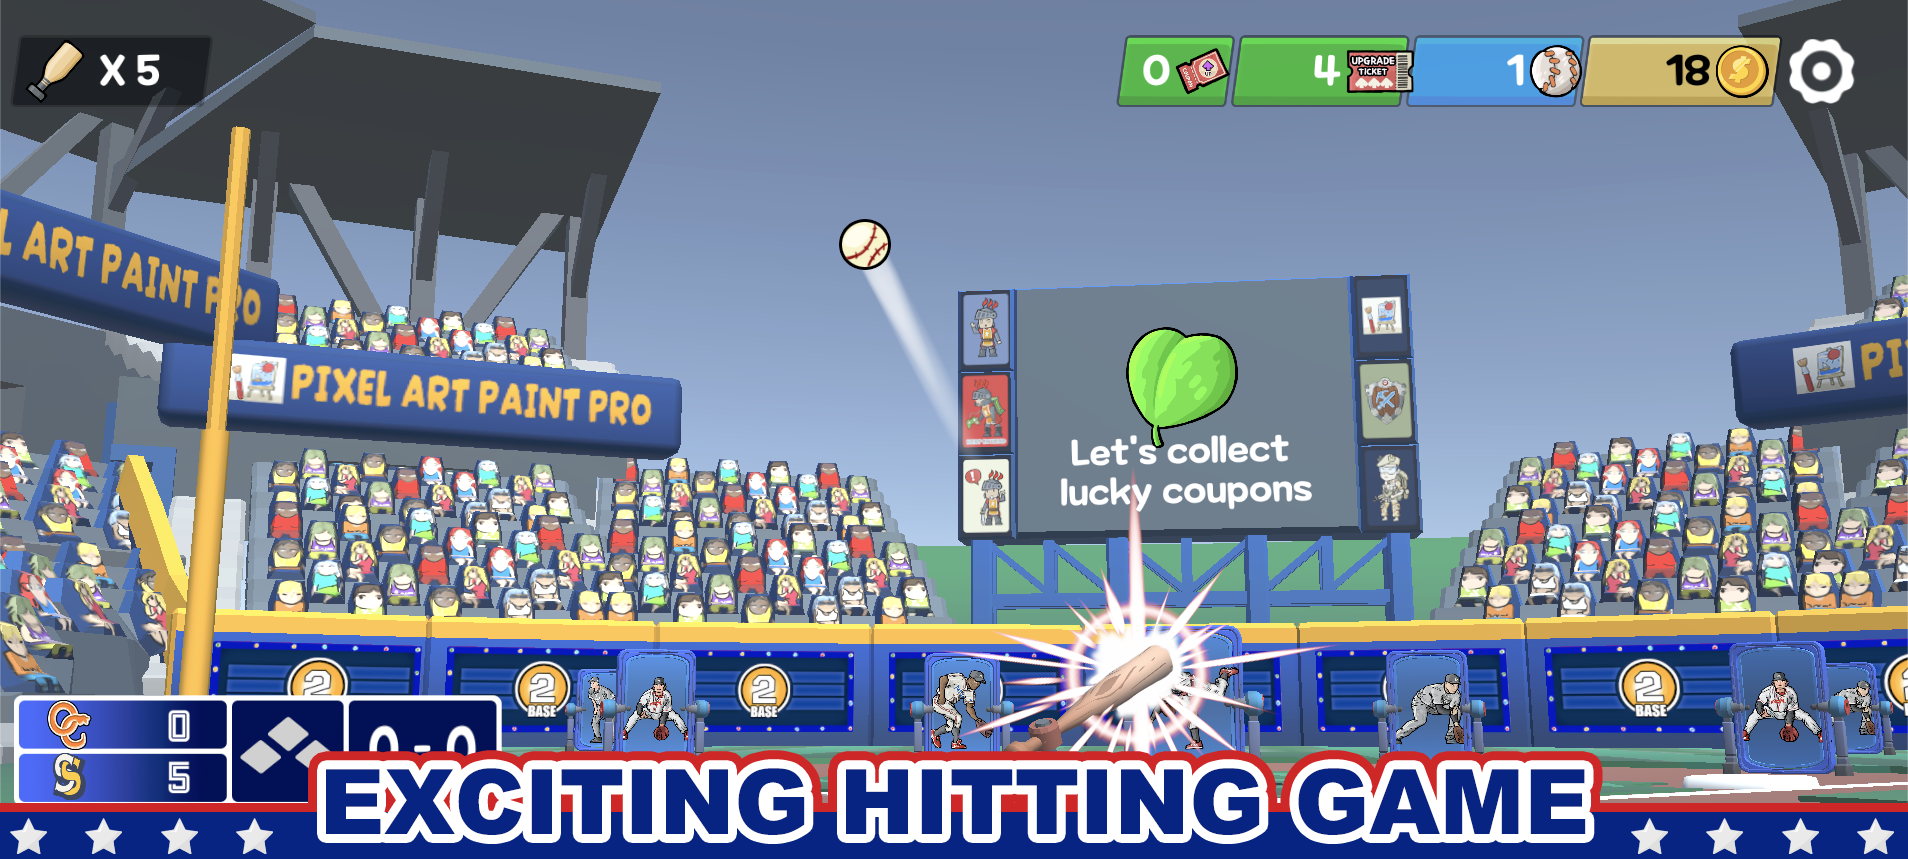 Pin baseball games - slugger遊戲截圖